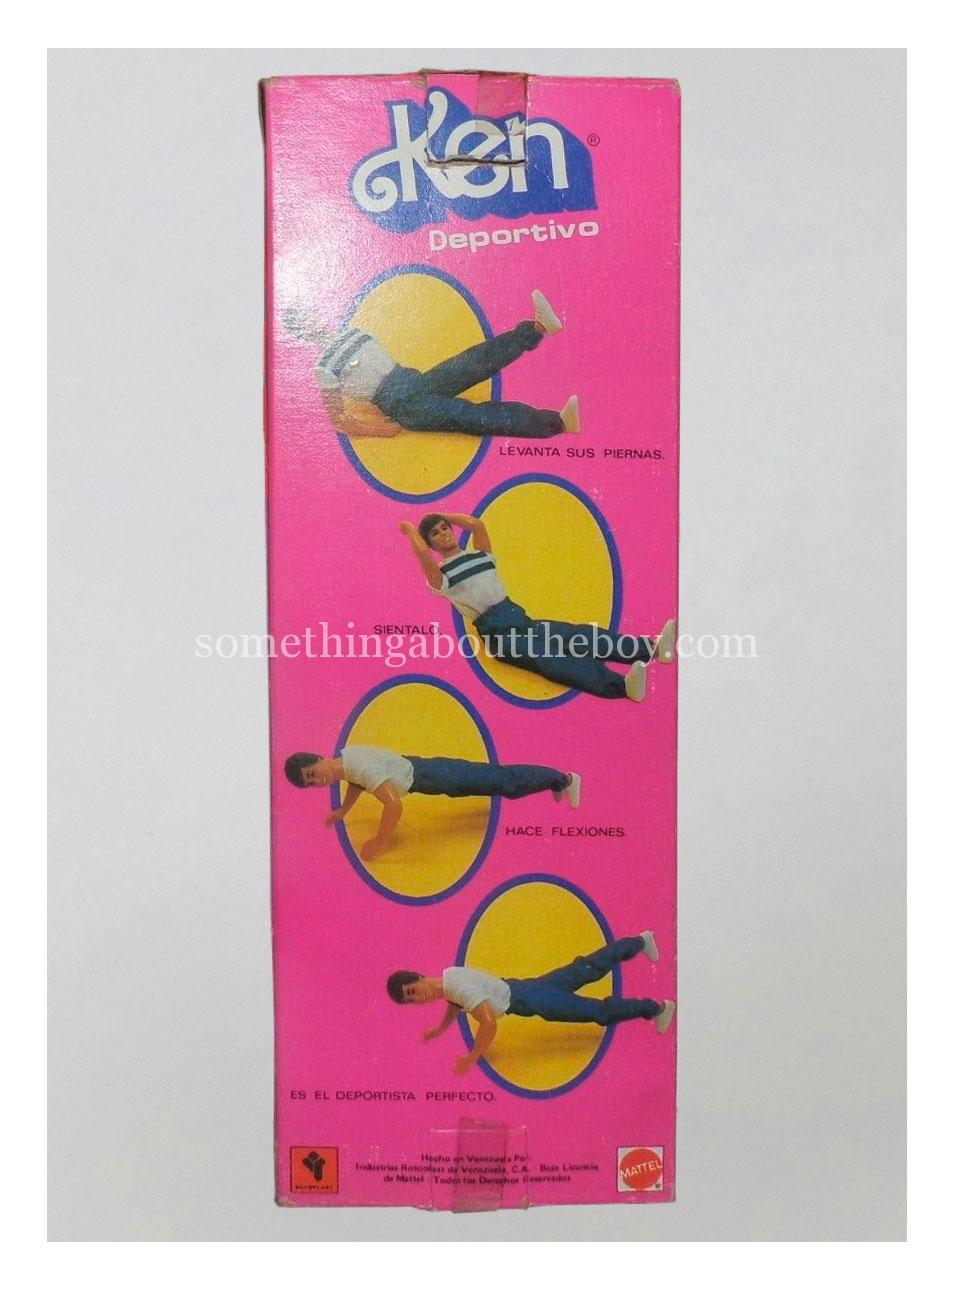 1985 Ken Deportivo (Venezuelan version) packaging